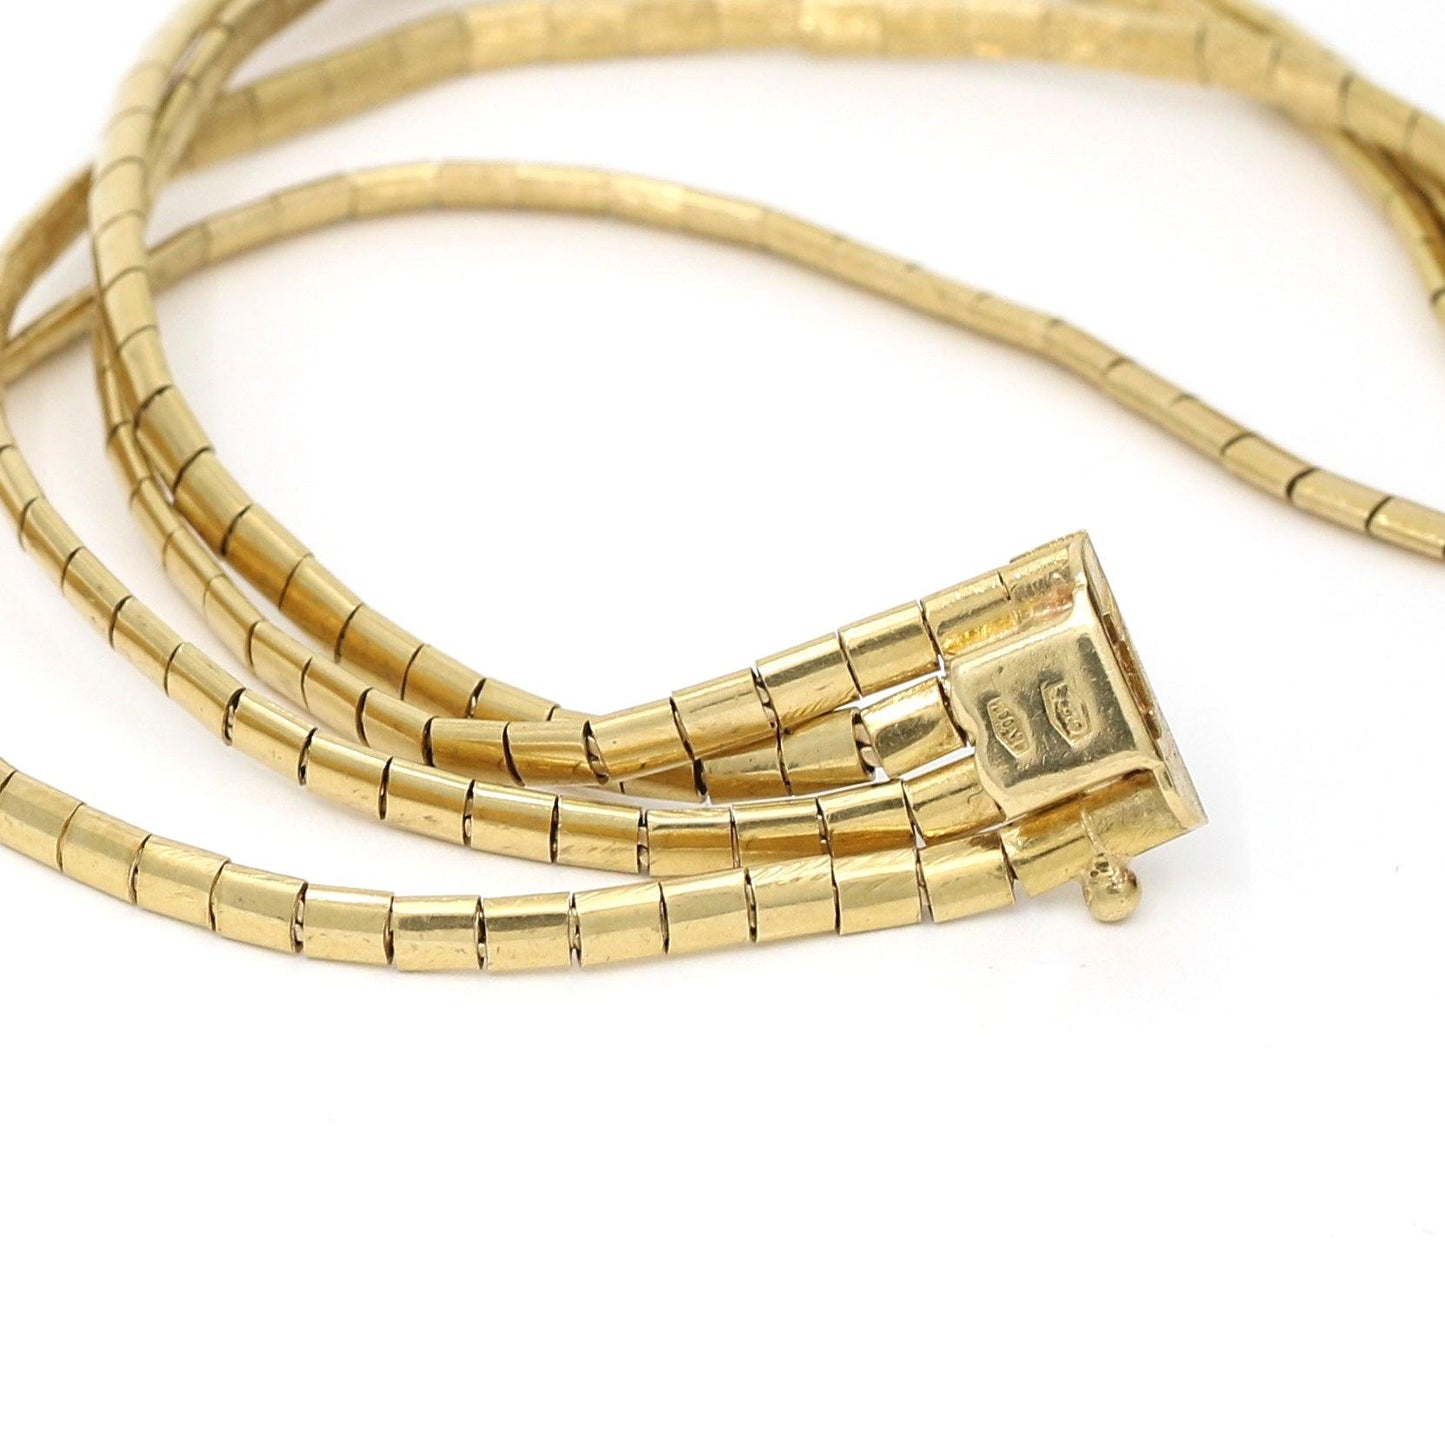 Women's Italian Multi-Strand Bracelet in 18k Yellow Gold - 31 Jewels Inc.